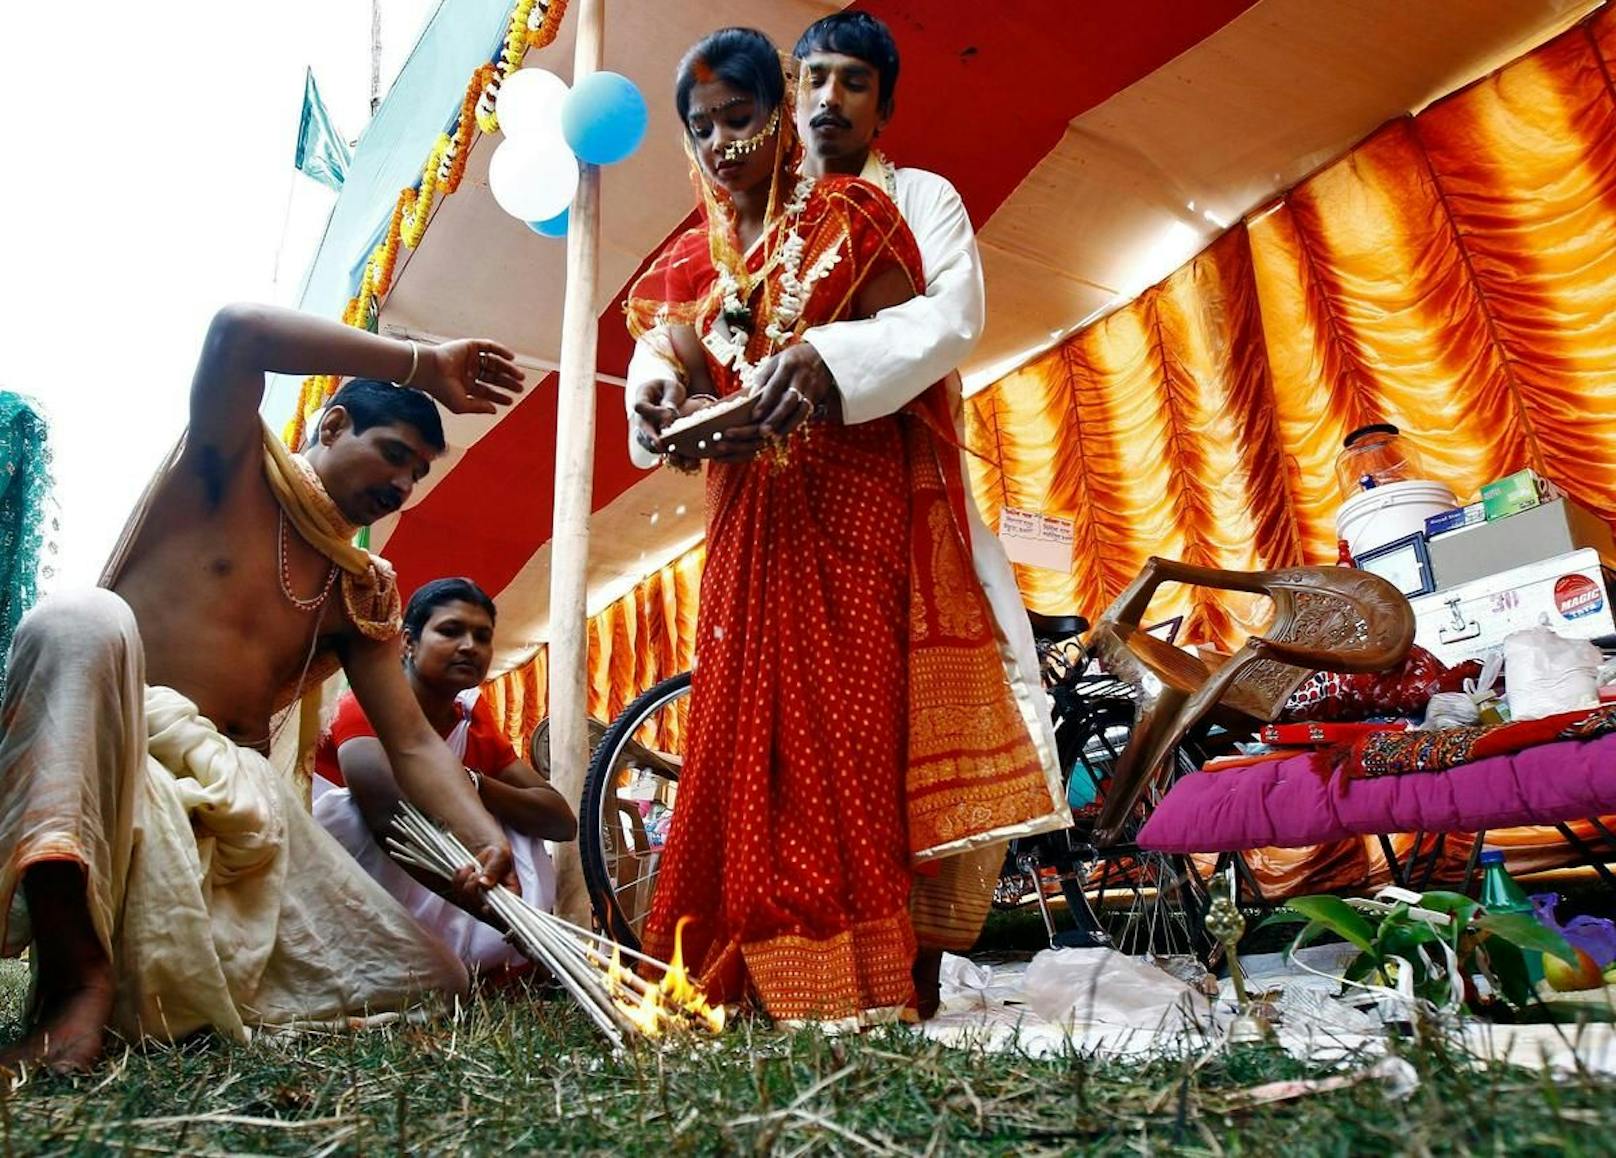 Zu einer traditionellen Hochzeit nach hinduistischem Glauben gehören mehrere zeremonielle Riten. Bei einer von diesen verstarb die Braut beim aktuellen Vorfall.